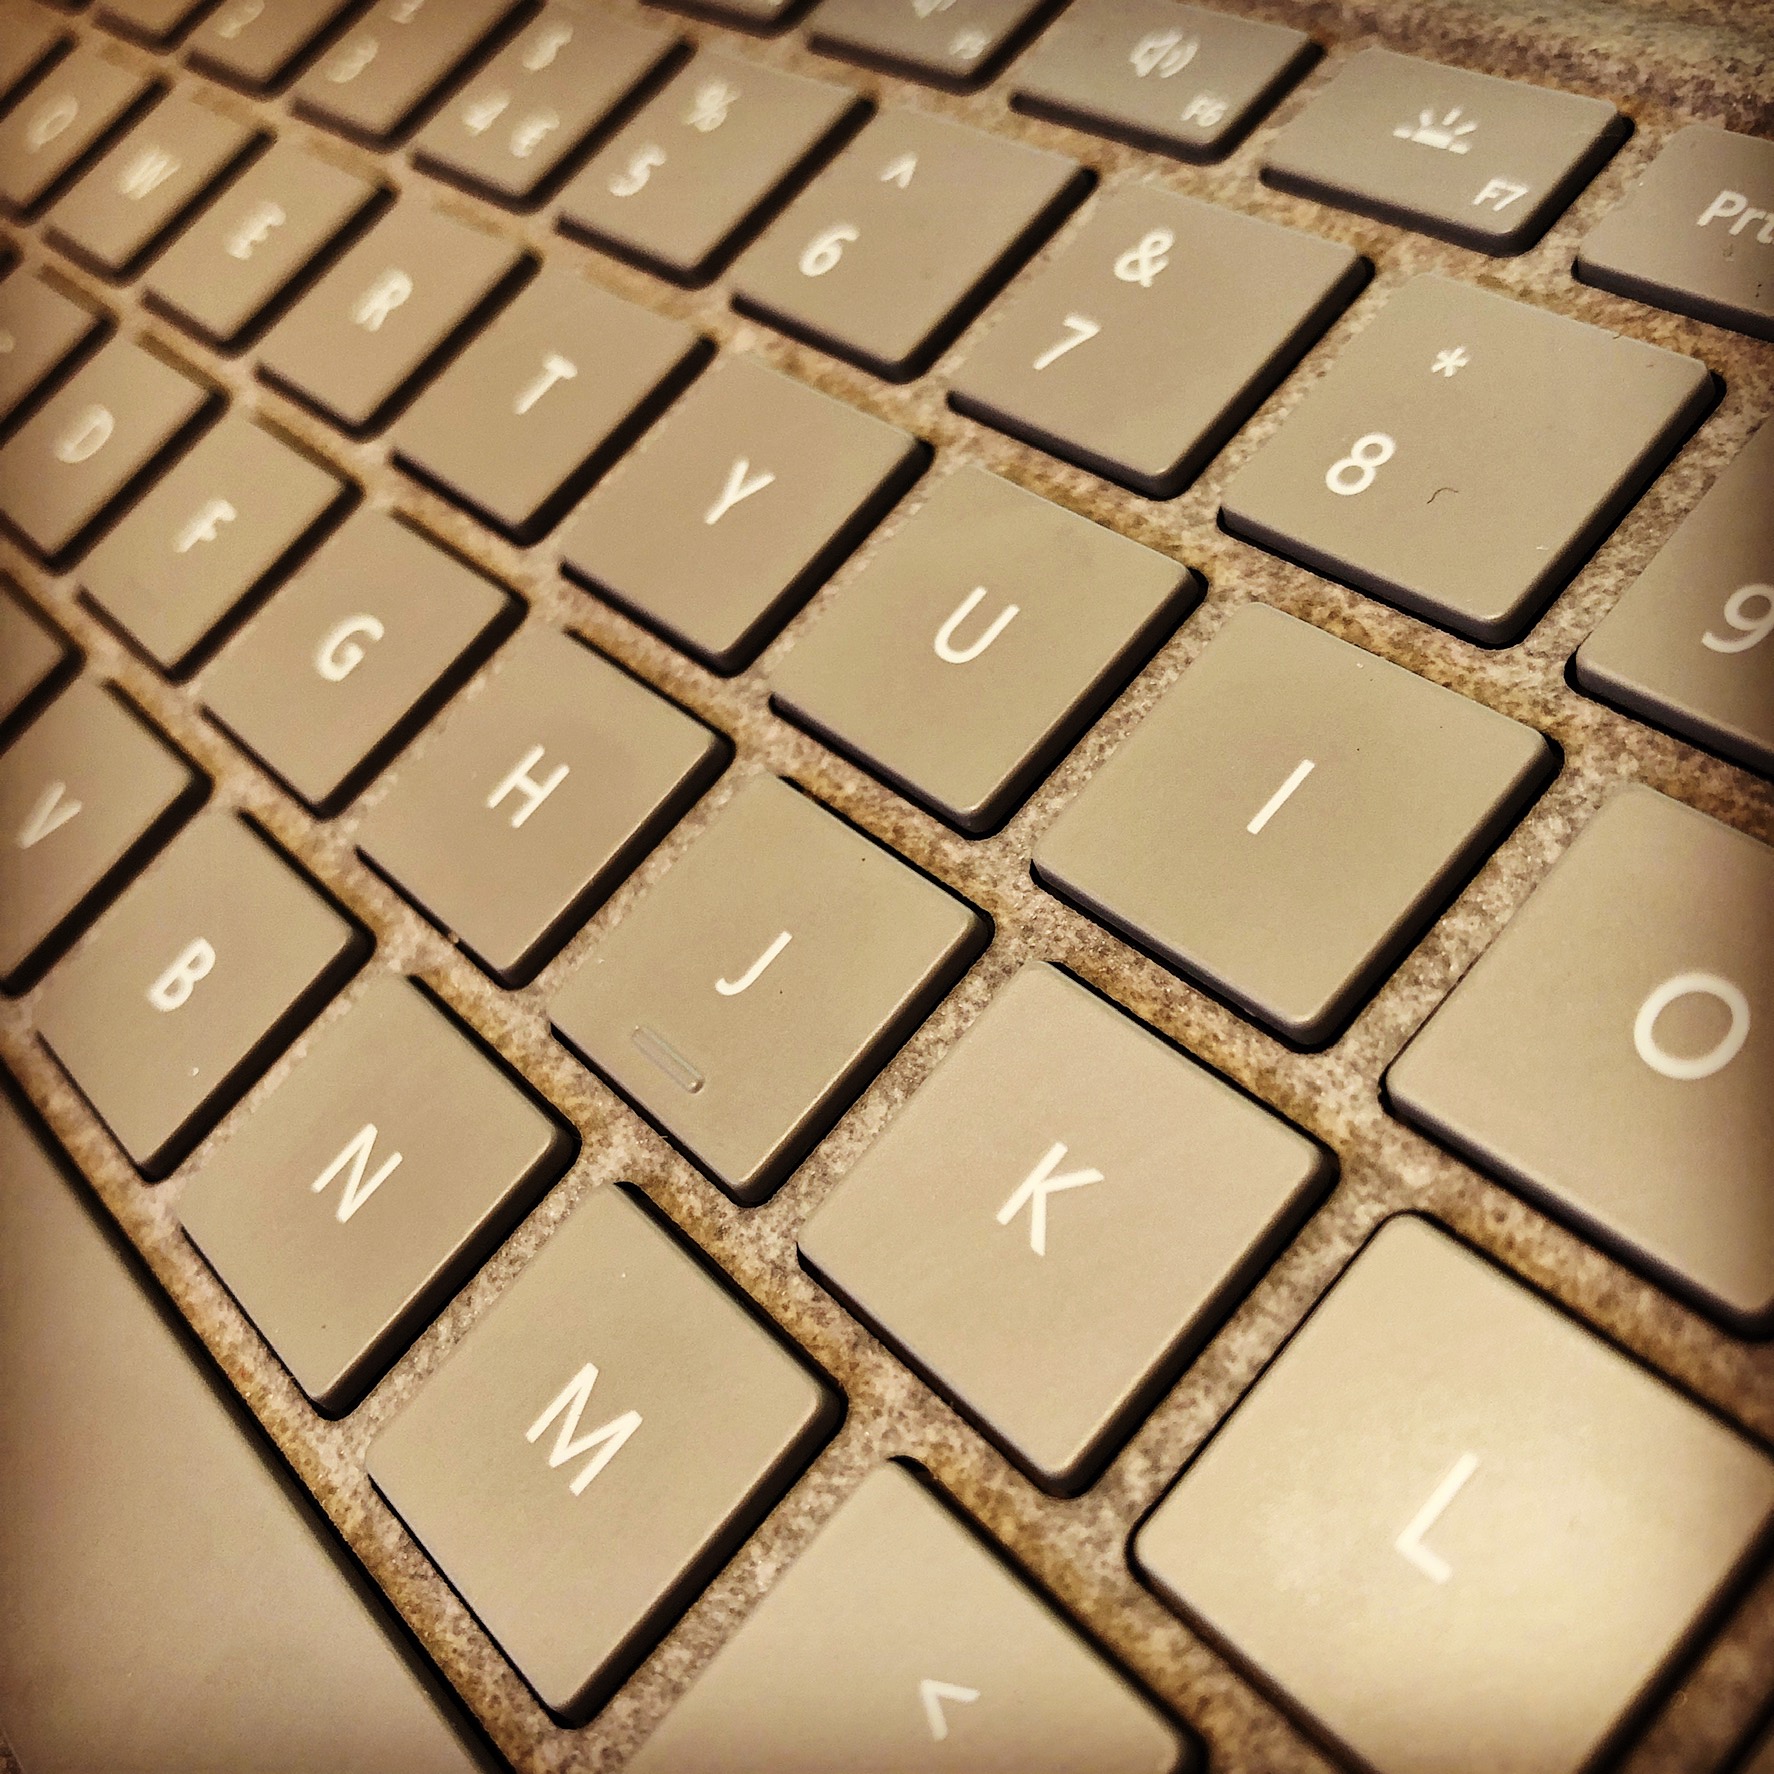 Surface Pro Keyboard